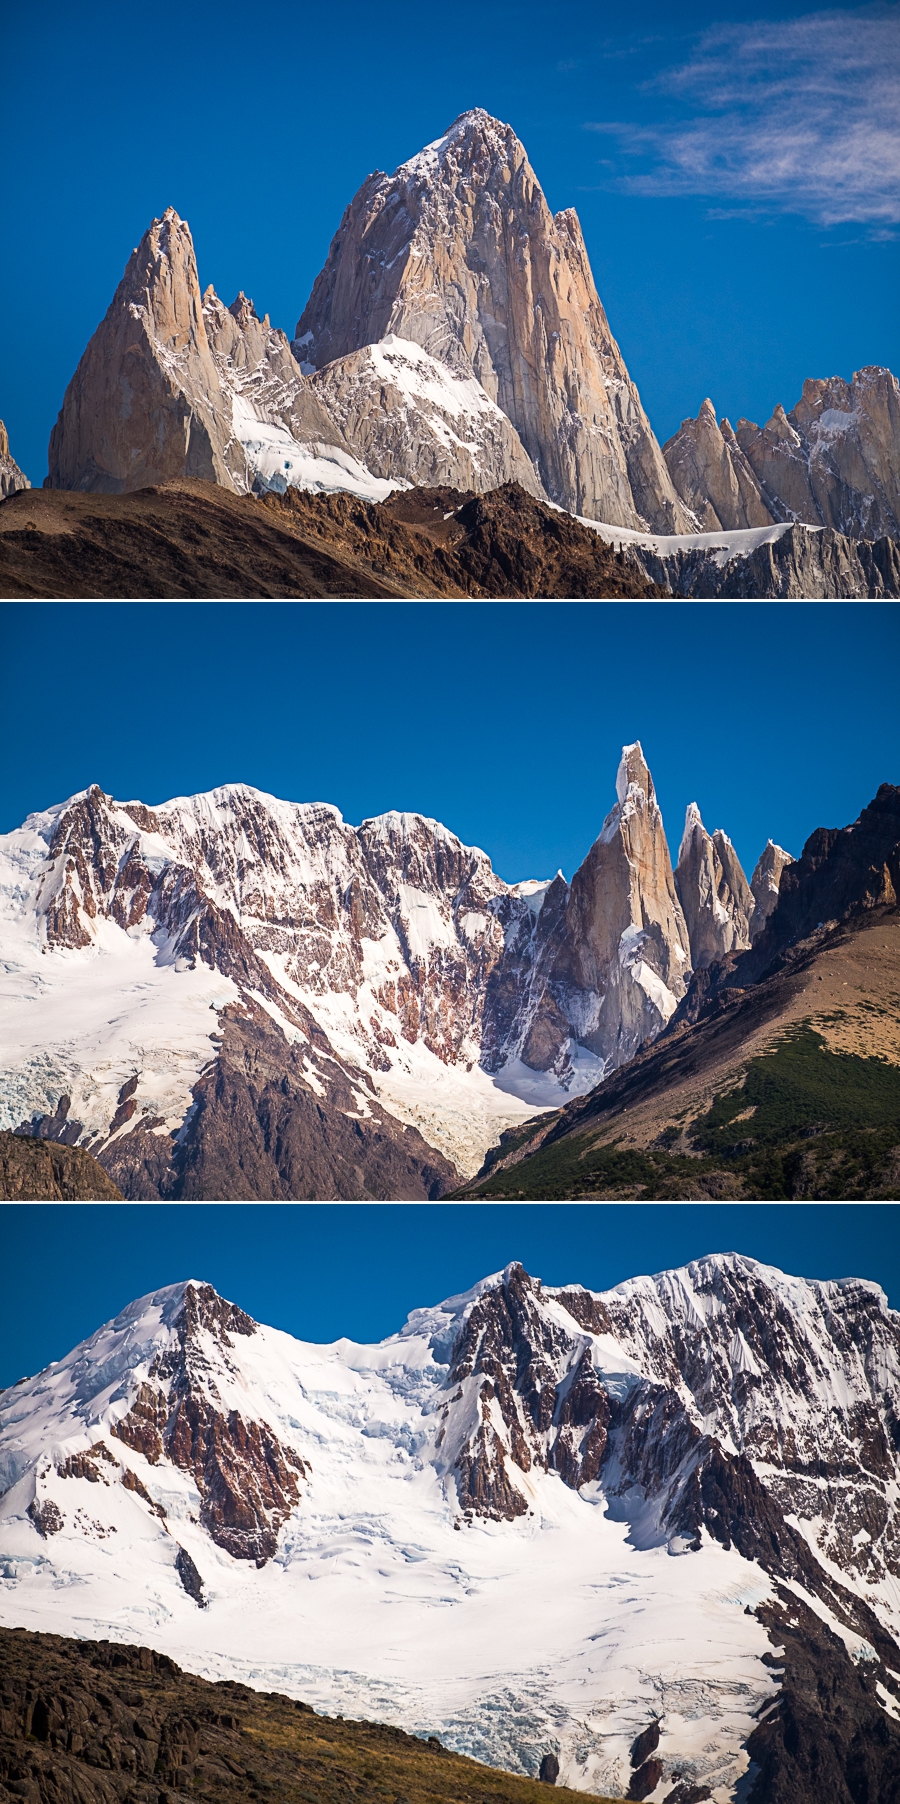 Closeup views of Cerro Fitz Roy and Cerro Torre from the Mirador de los Cóndores - El Chaltén - Argentina